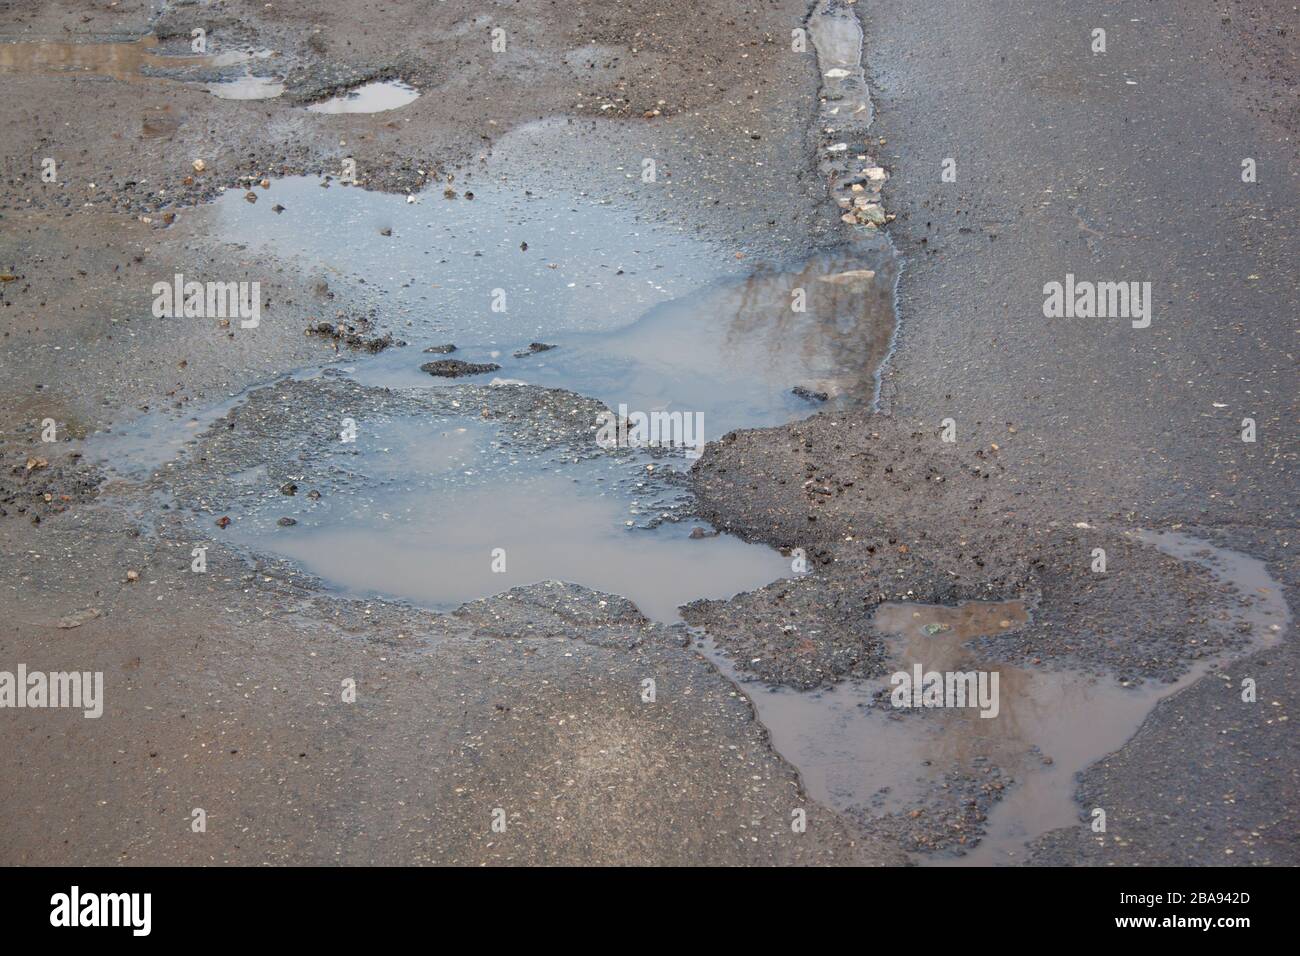 La cattiva strada asfaltata con una buche piena d'acqua. Pericoloso distrutto su strada. Acqua limpida nella pozzanghera. Foto Stock